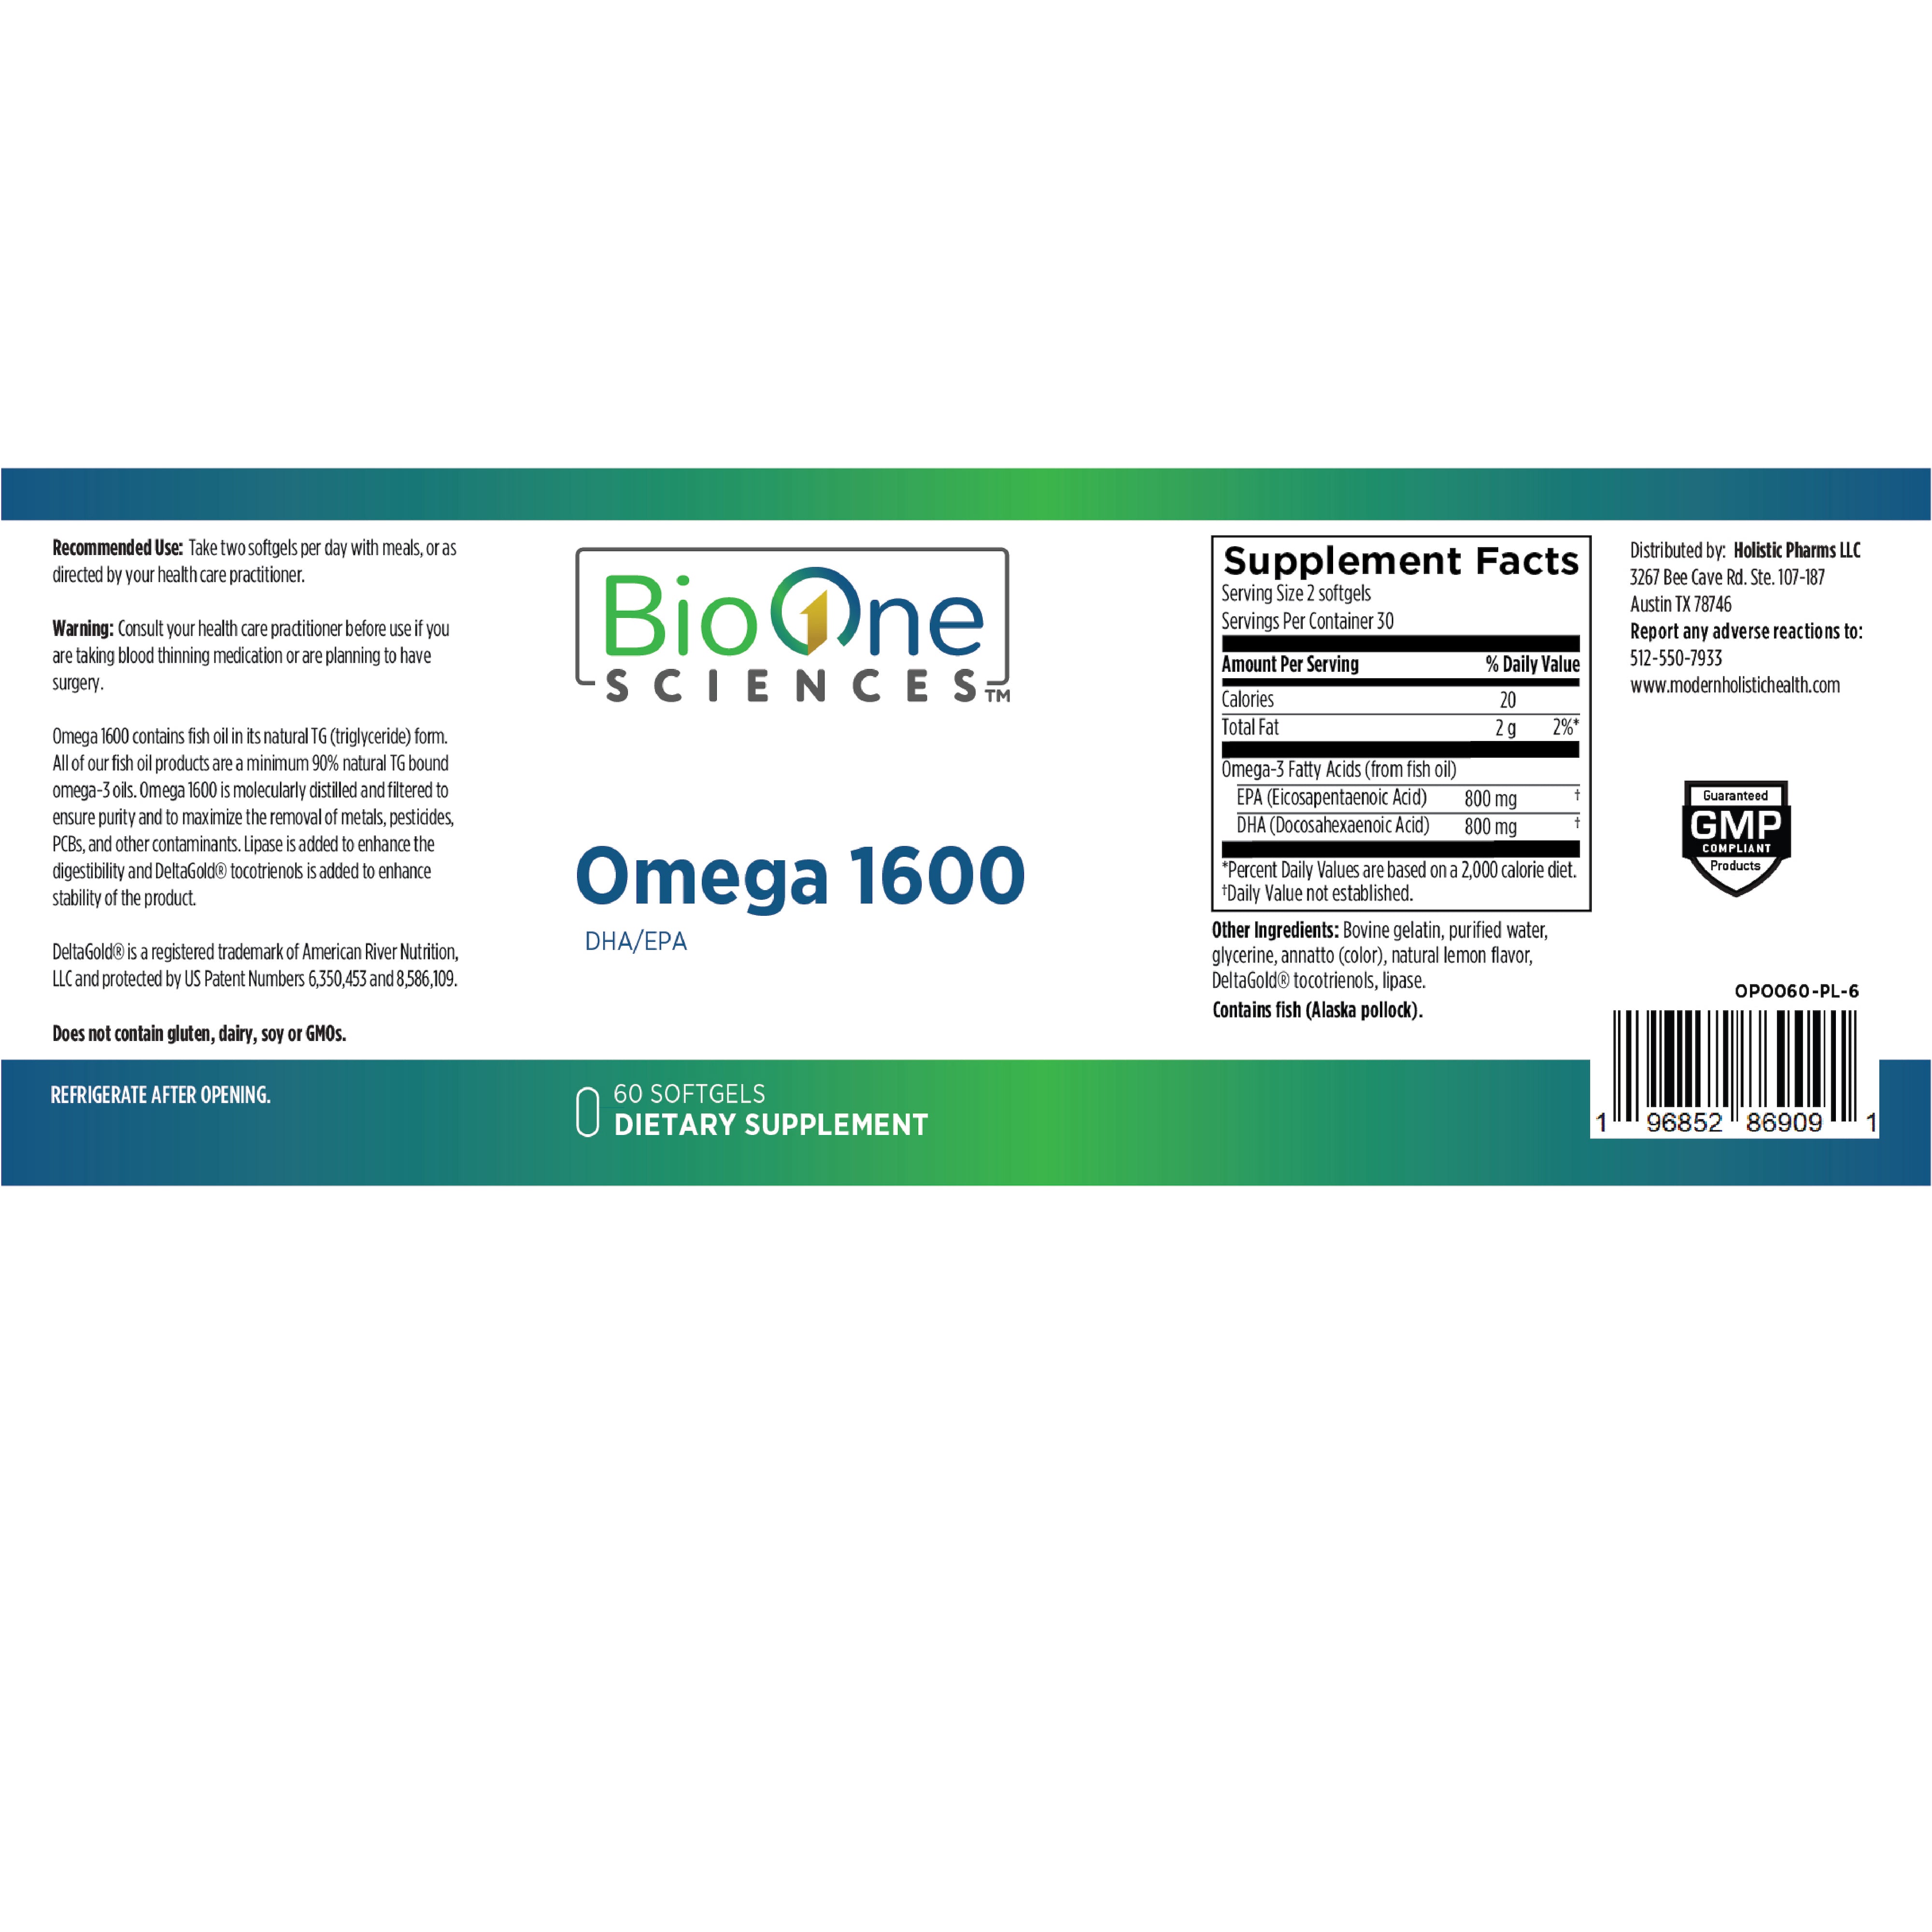 Omega 1600 (DHA/EPA)